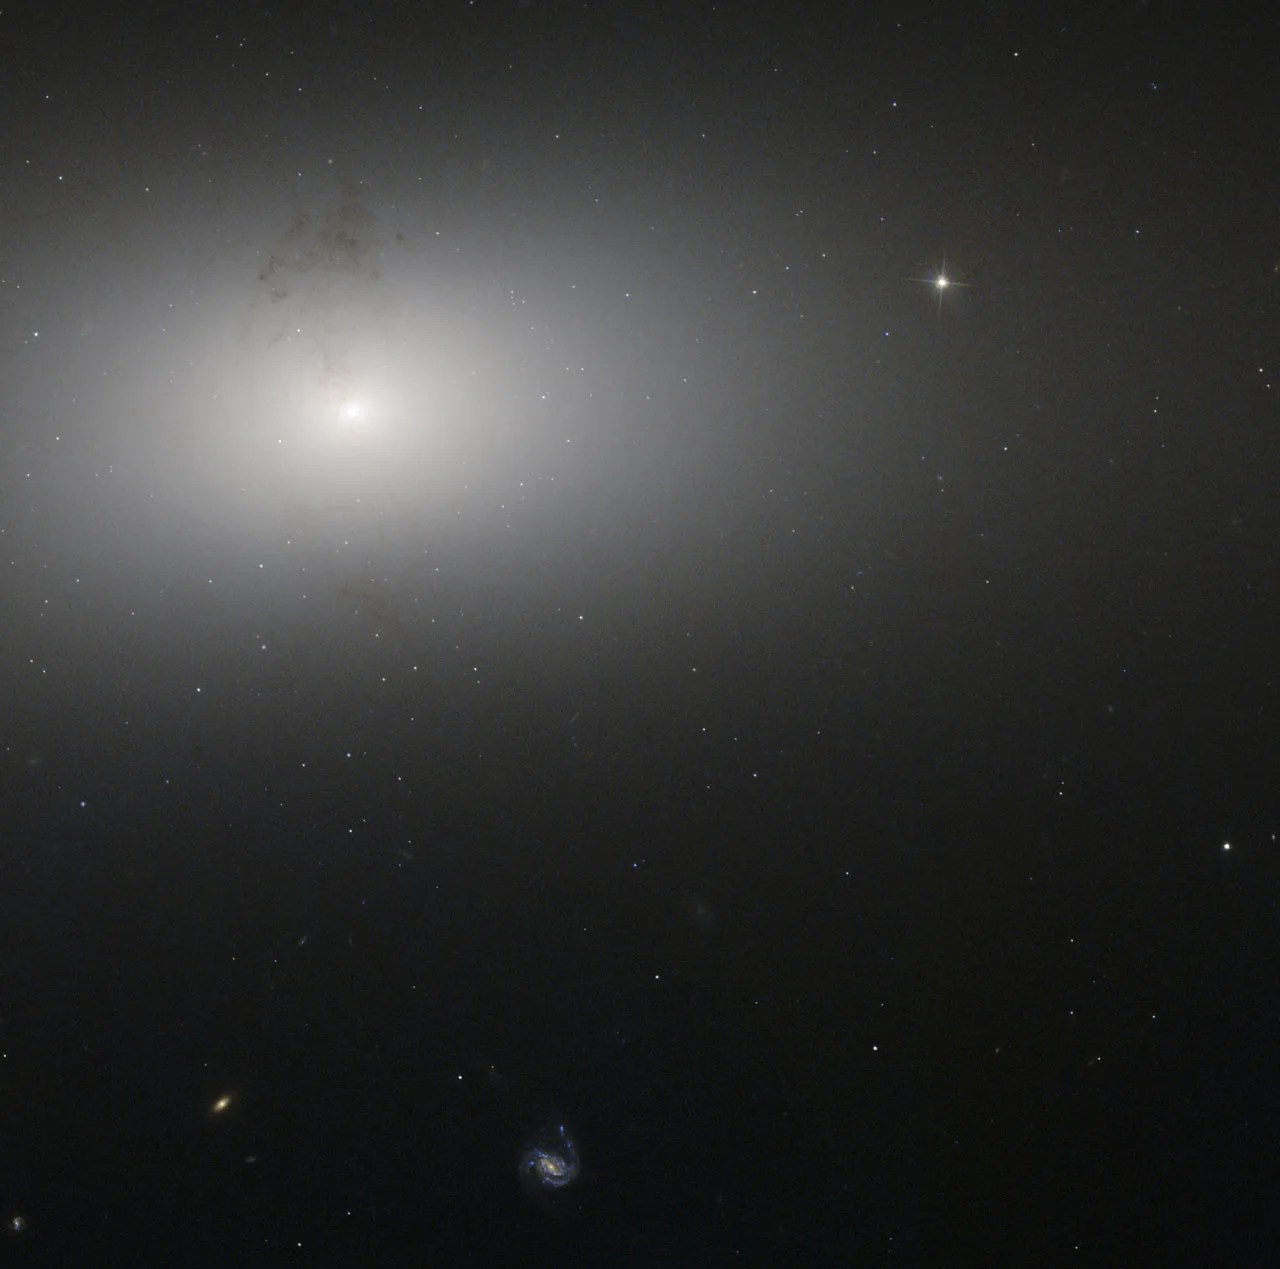 elliptical galaxy NGC 2768